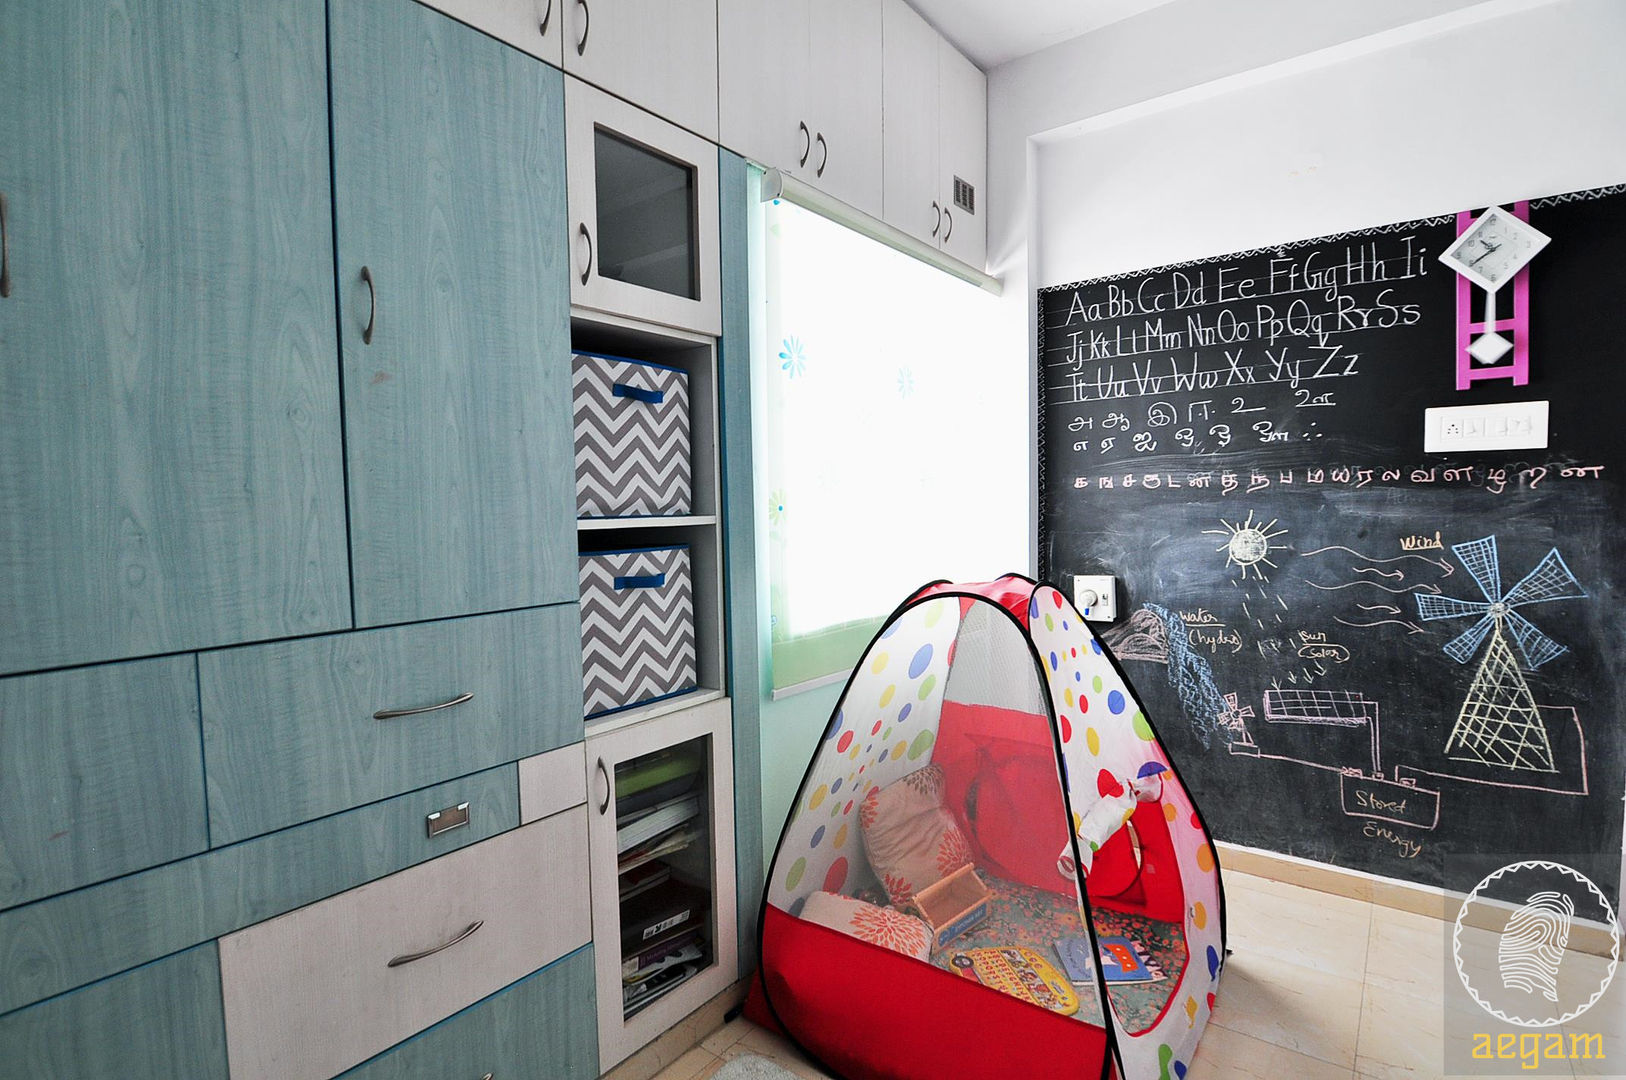 Apartment Remodel, Aegam Aegam Habitaciones para niños de estilo moderno